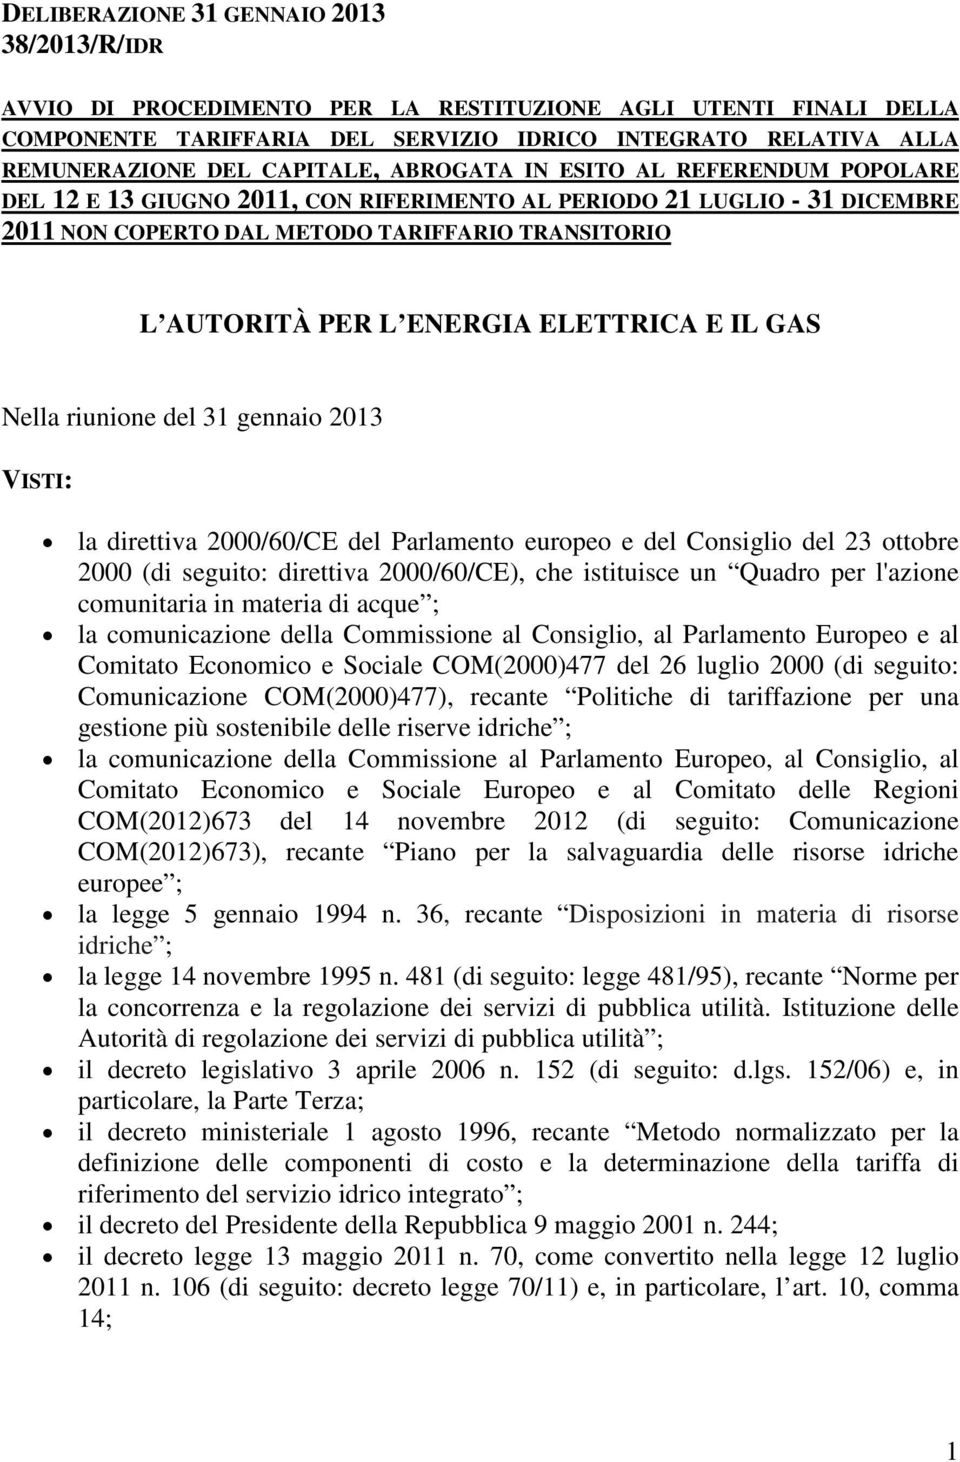 ENERGIA ELETTRICA E IL GAS Nella riunione del 31 gennaio 2013 VISTI: la direttiva 2000/60/CE del Parlamento europeo e del Consiglio del 23 ottobre 2000 (di seguito: direttiva 2000/60/CE), che